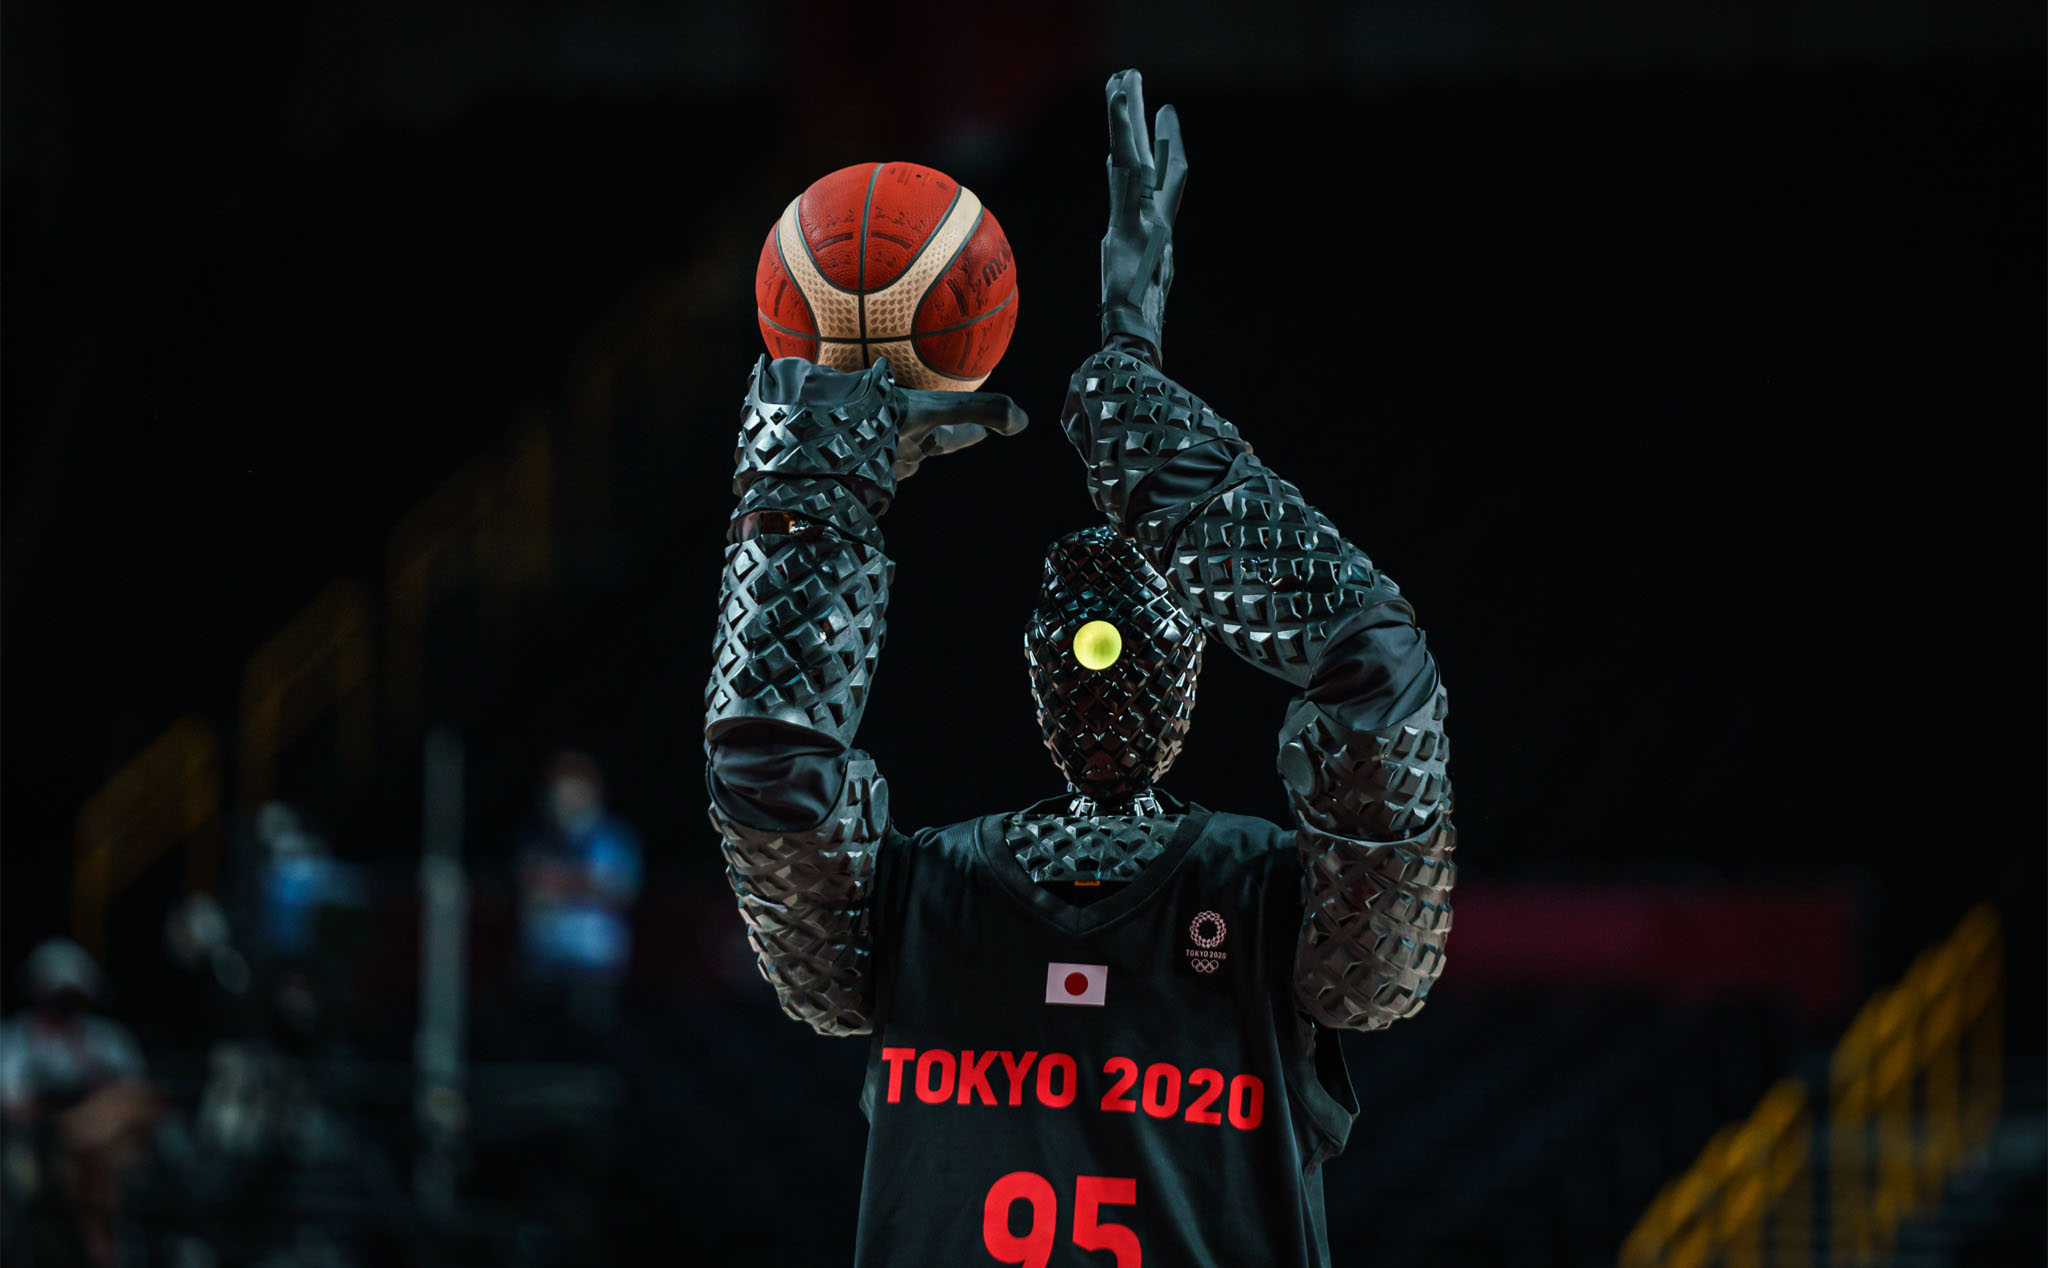 Chú robot chơi bóng rổ của Toyota, đang làm nhiều người kinh ngạc ở Olympic